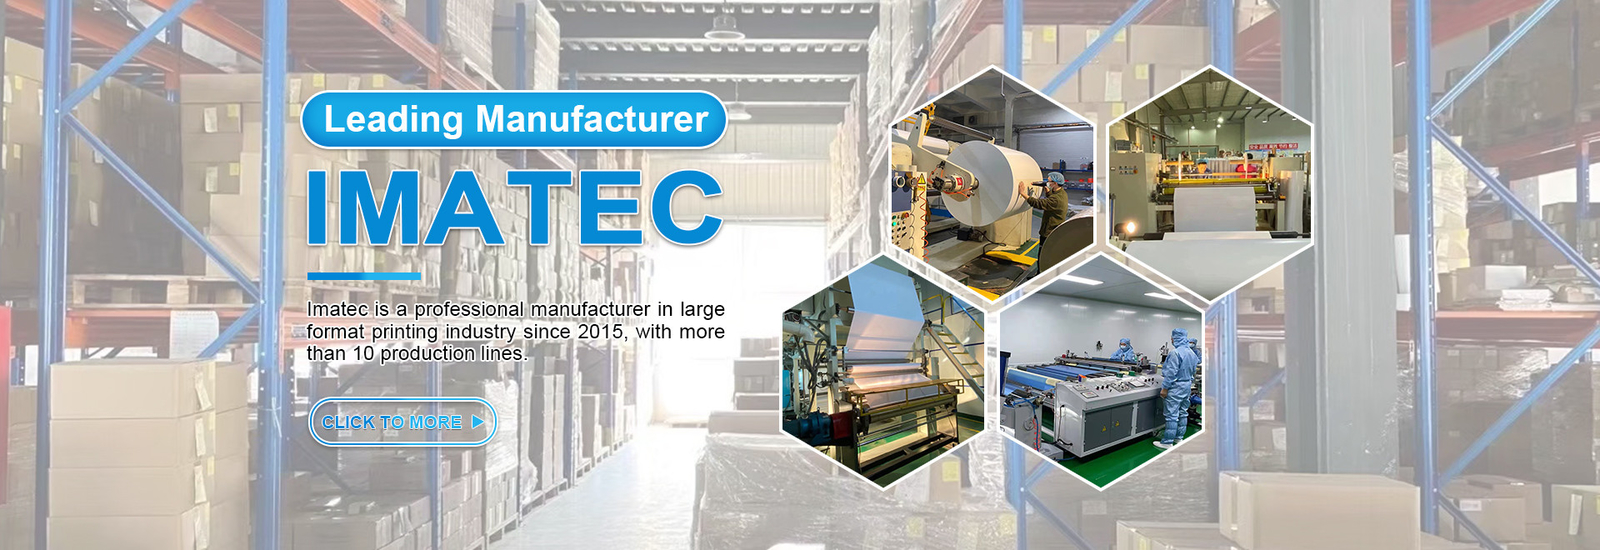 Imatec Imaging Co., Ltd. สายการผลิตของผู้ผลิต